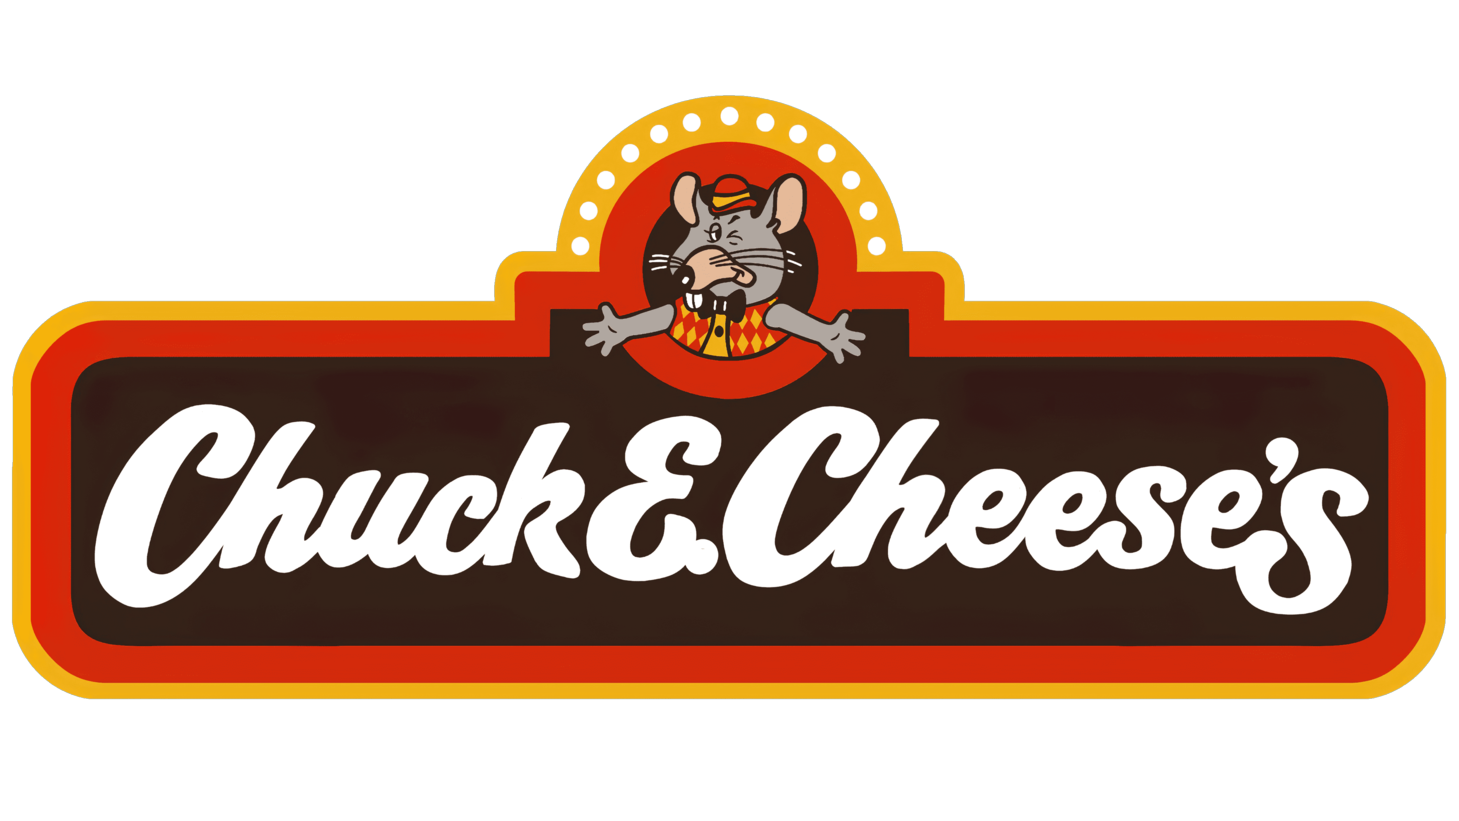 Chuck e. cheeses first era sign 1984 1989